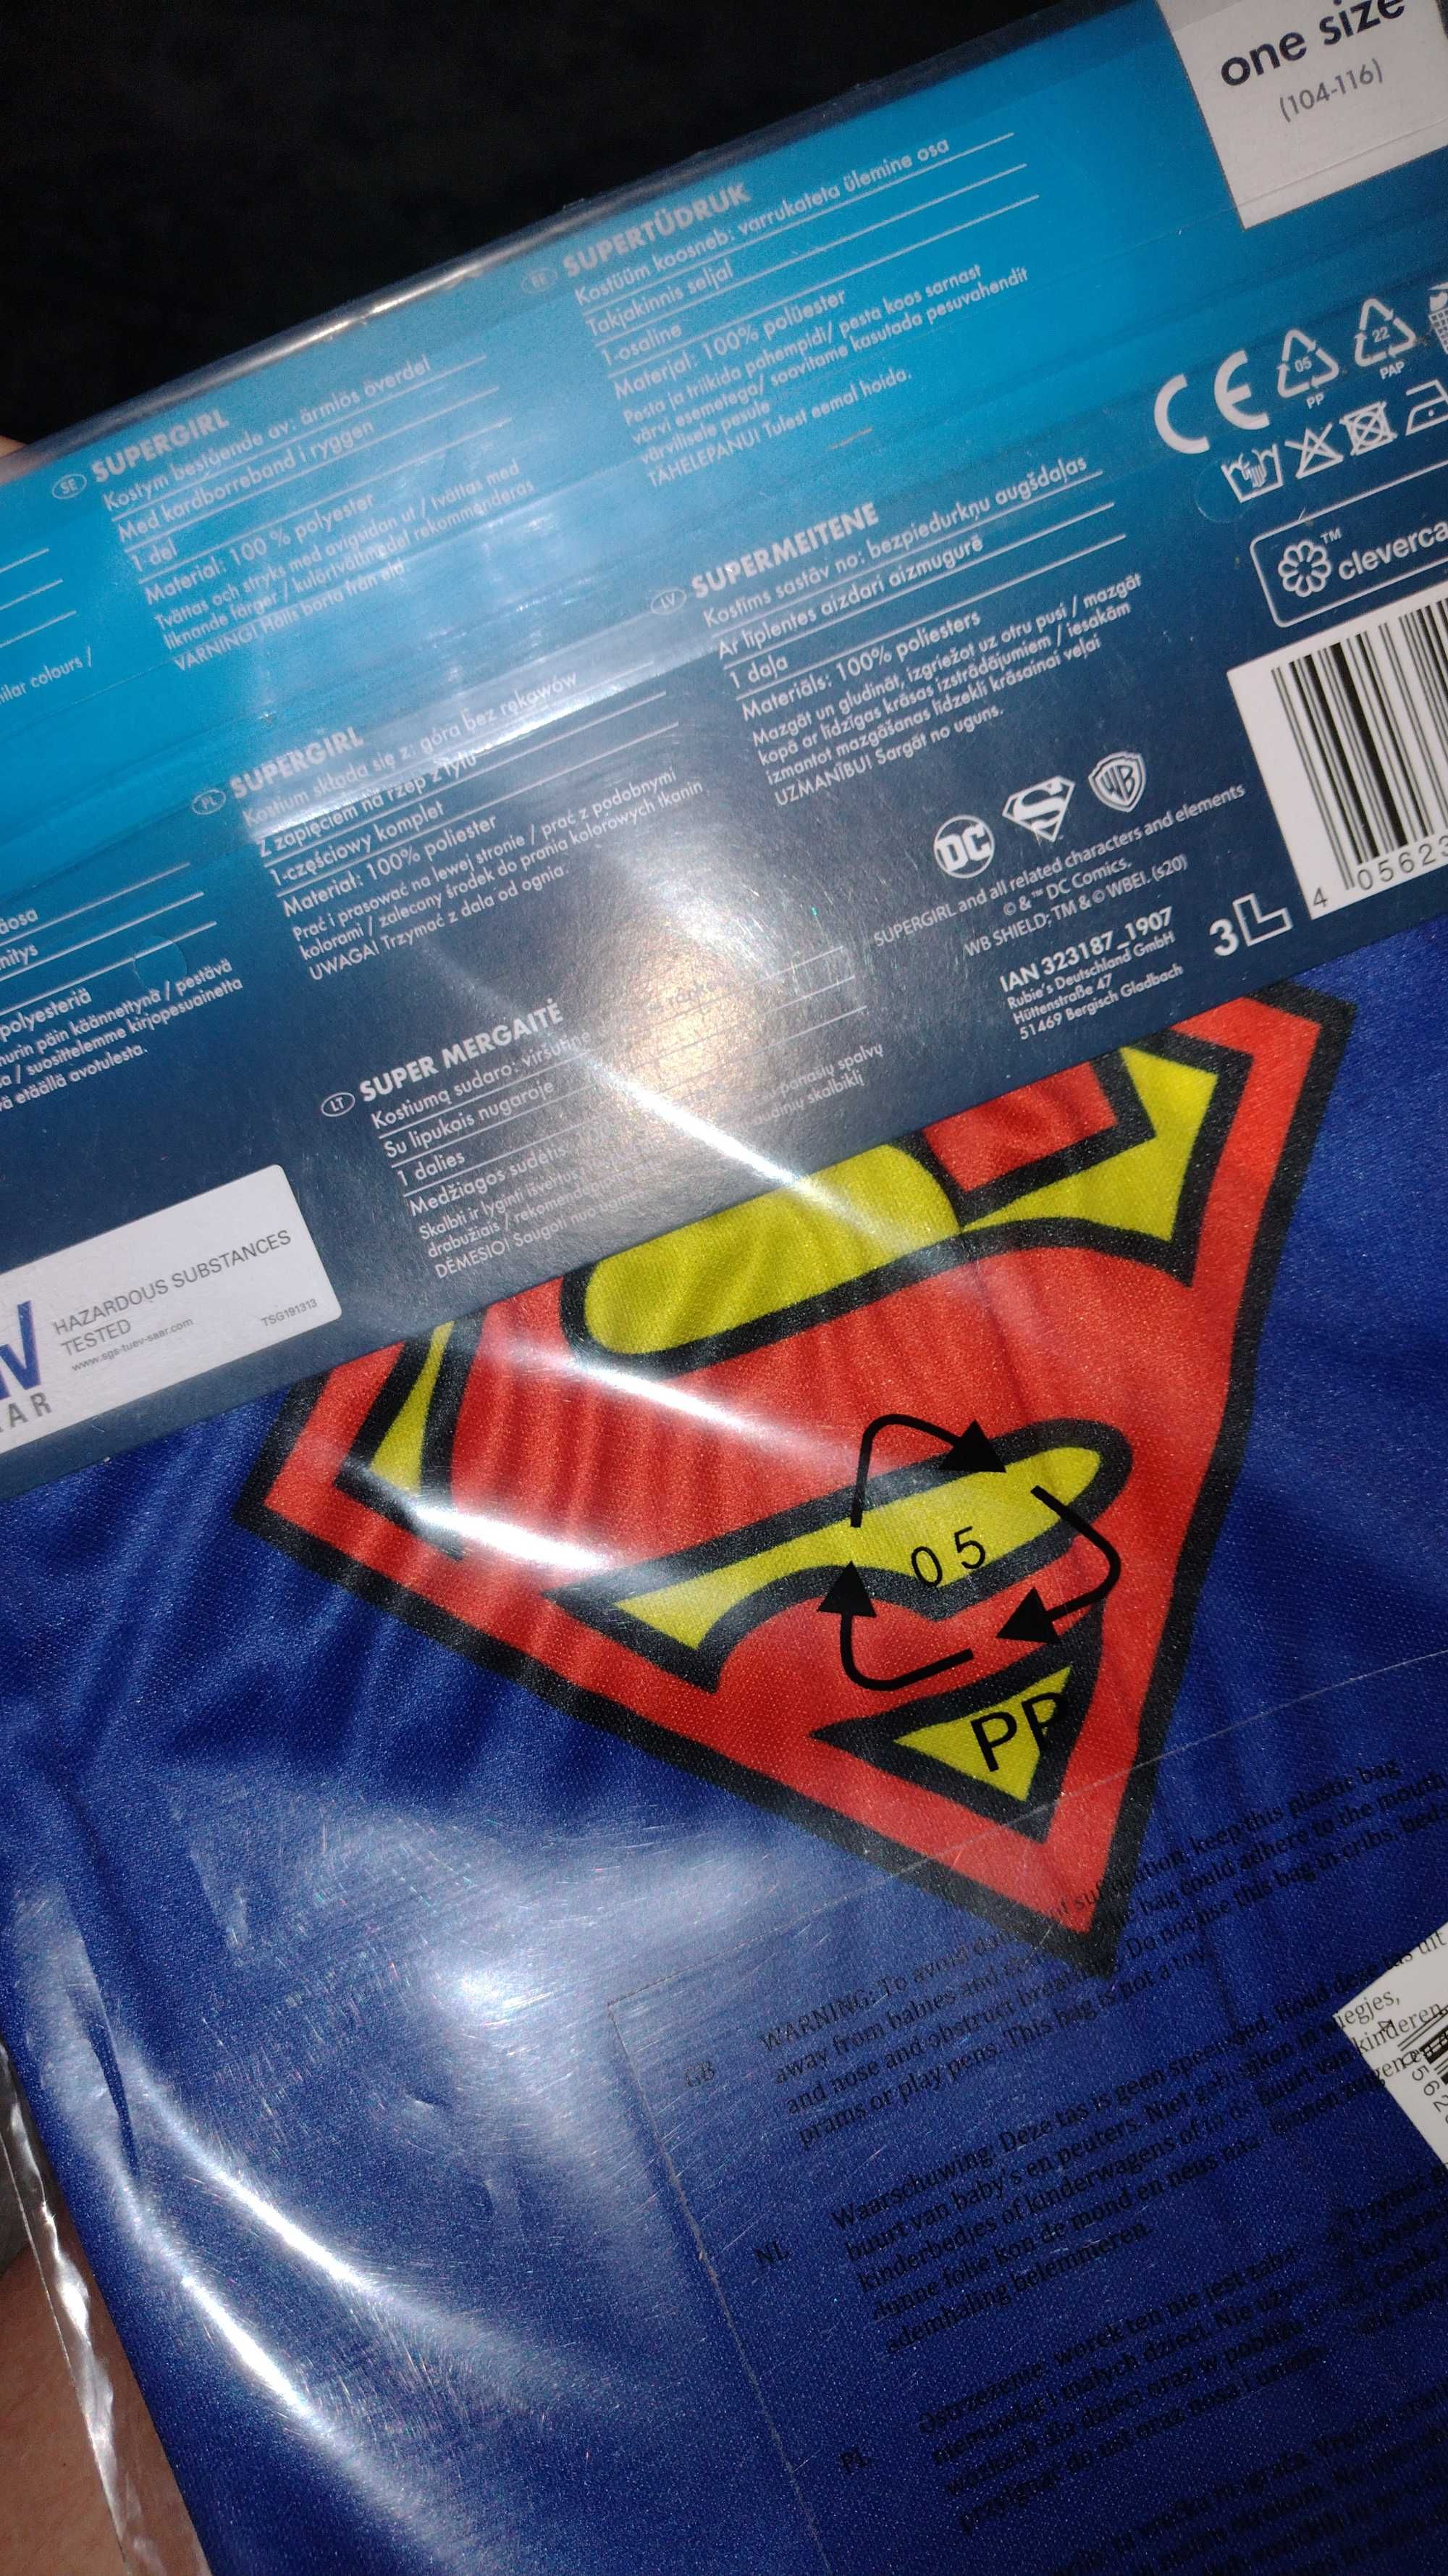 Supergirl kostium
Rozmiar one size 104-116cm